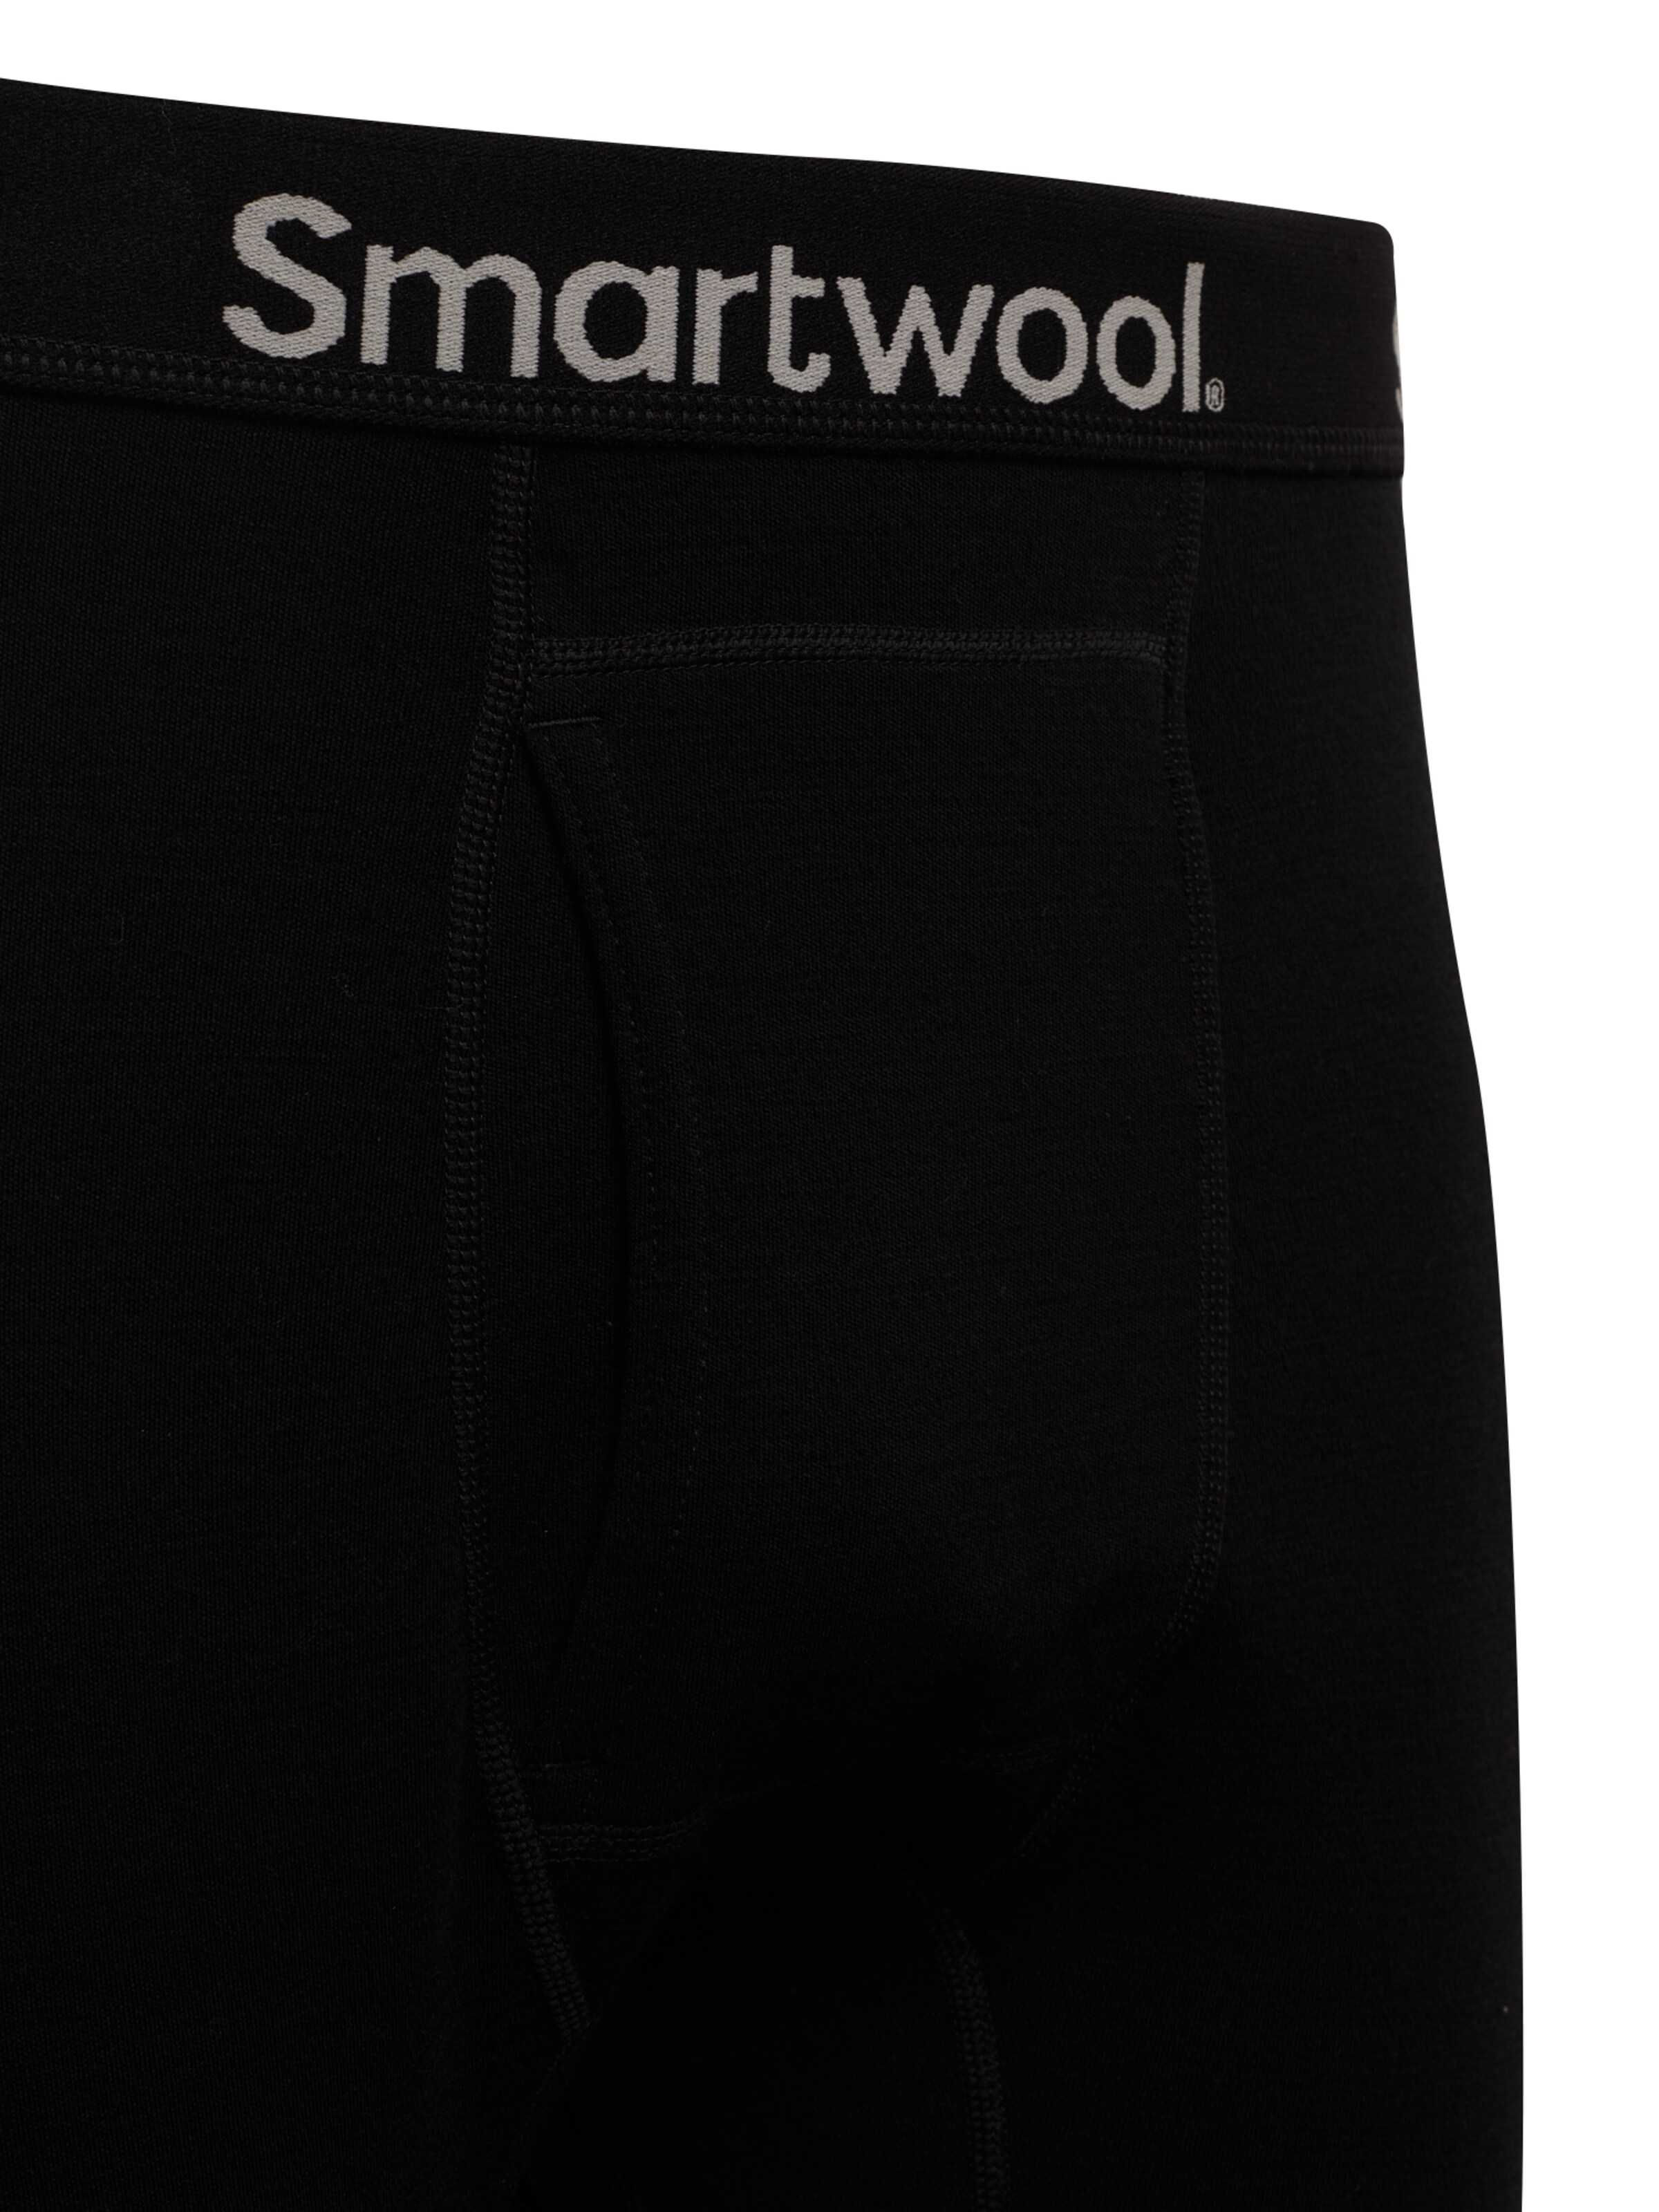 Smartwool Sportunterhose in Schwarz 